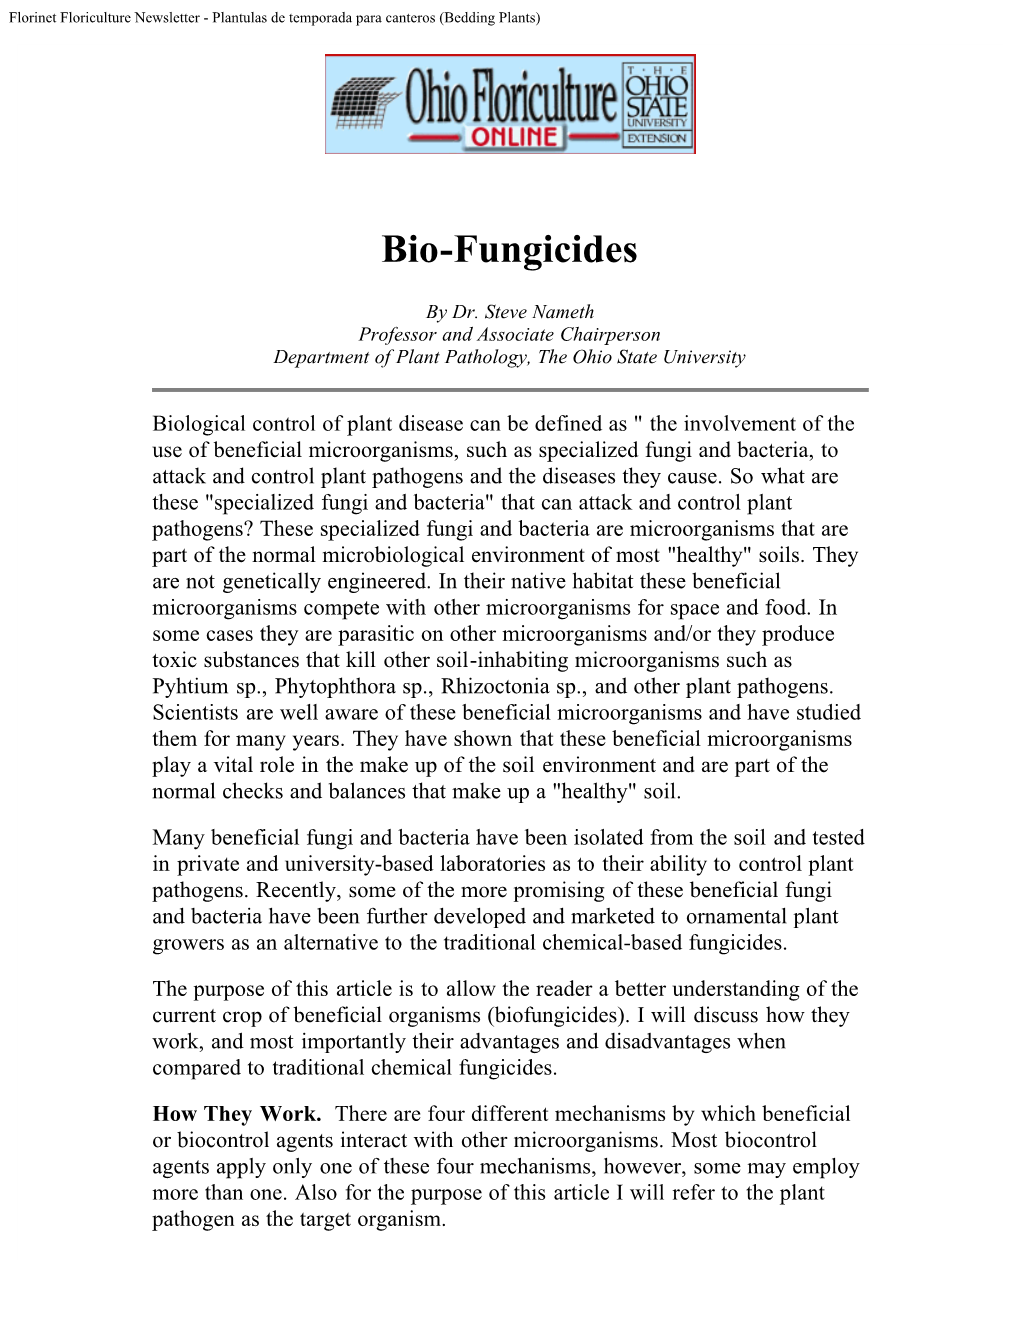 Bio-Fungicides